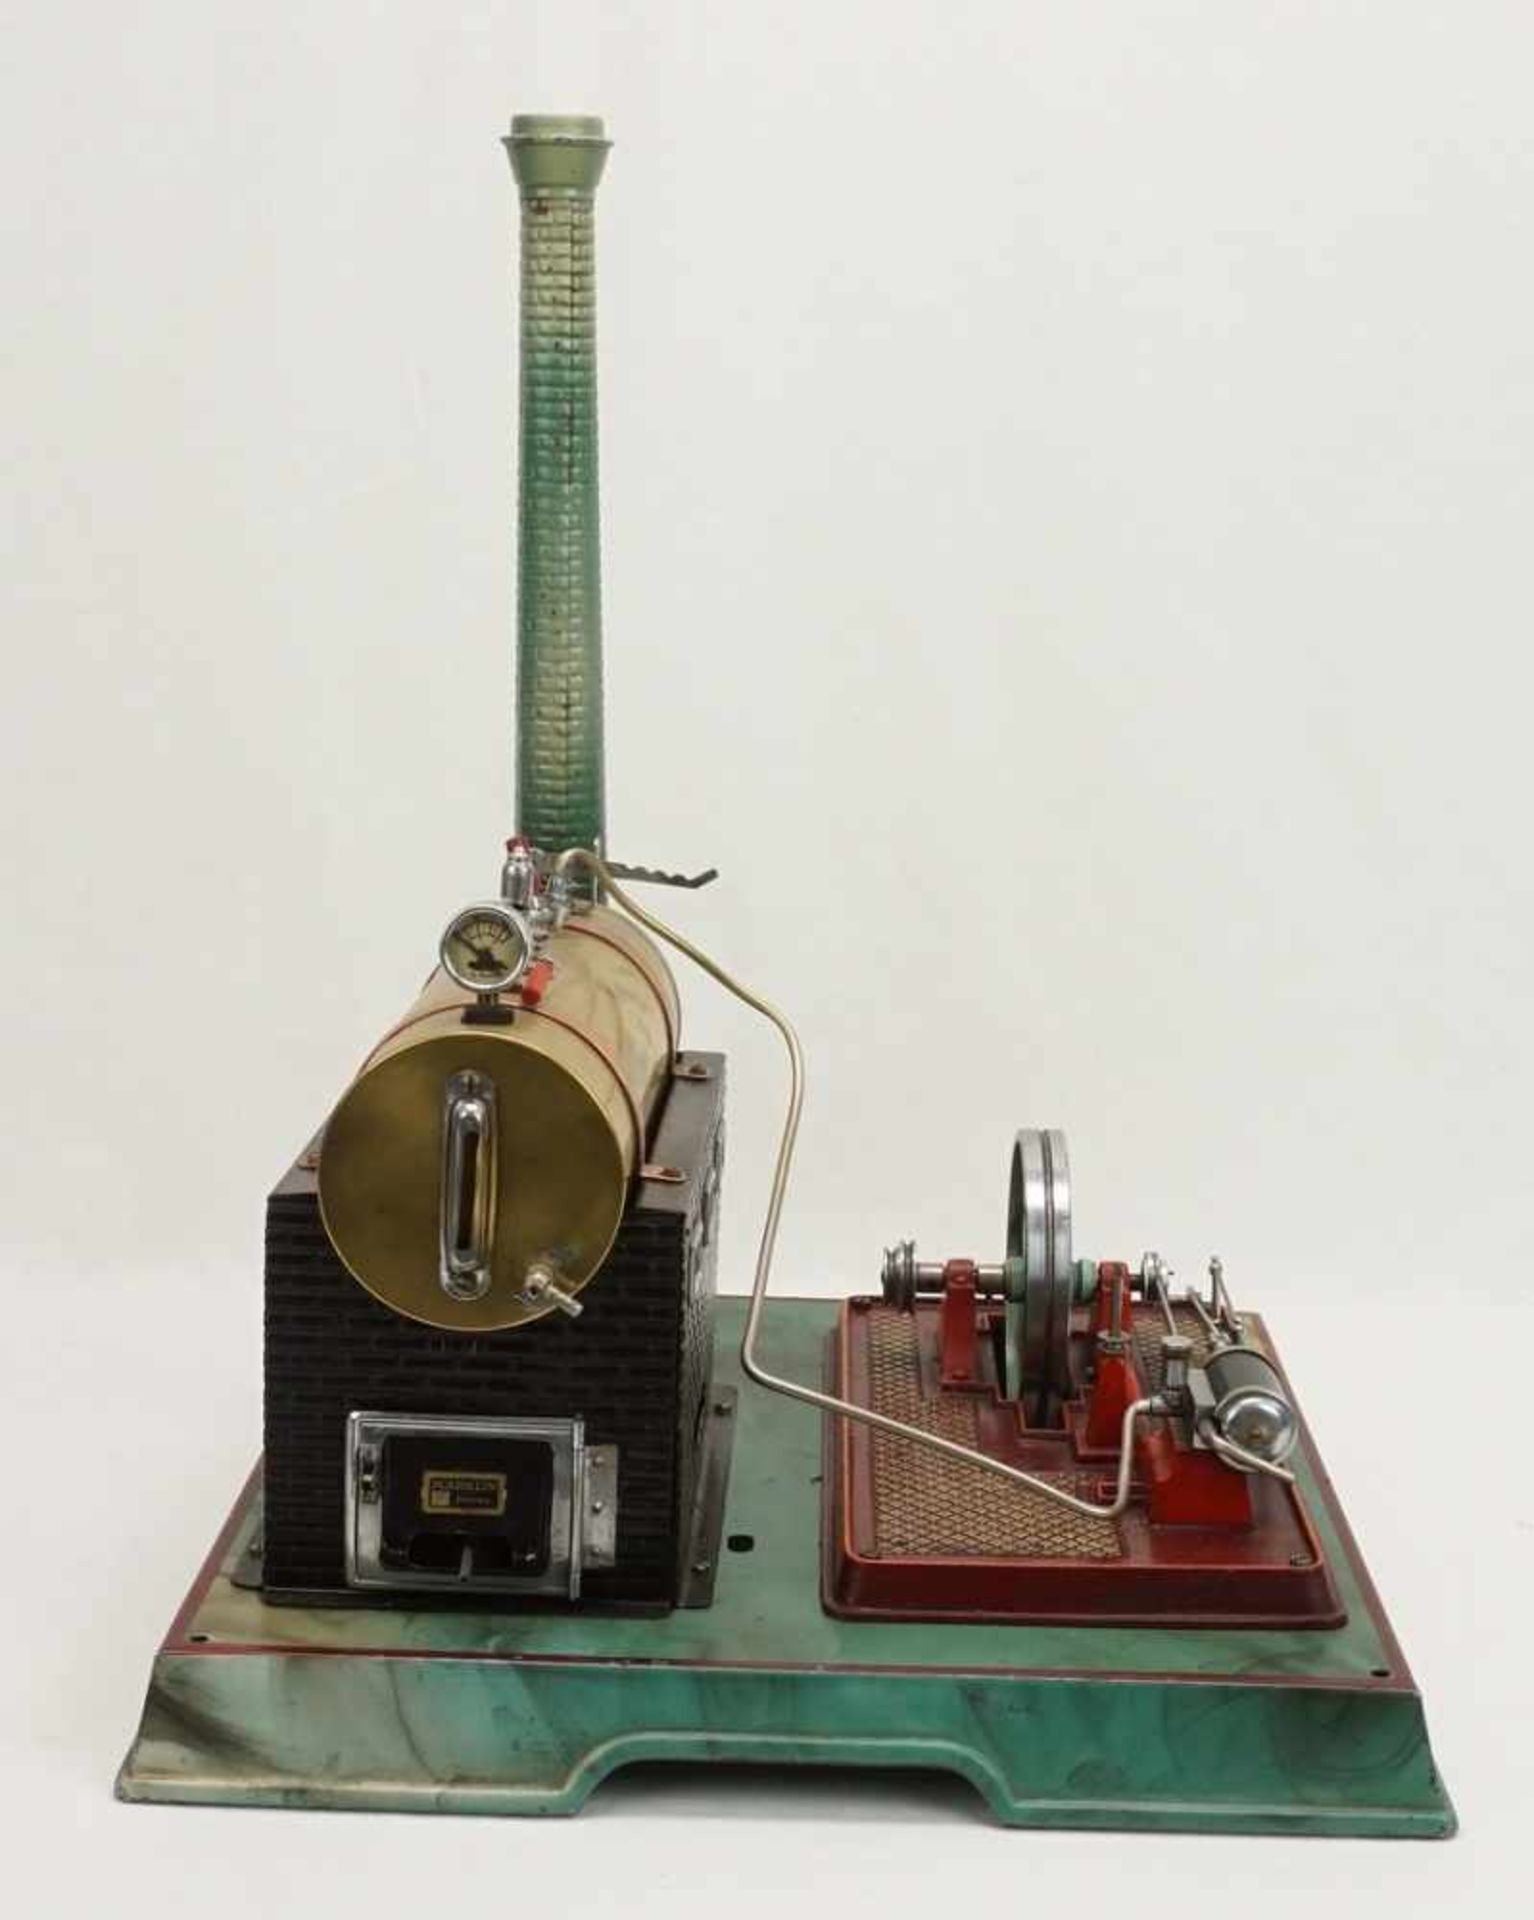 Märklin Dampfmaschine mit Transmissionliegender Messingkessel, mit Armaturen und feststehendem - Image 3 of 4